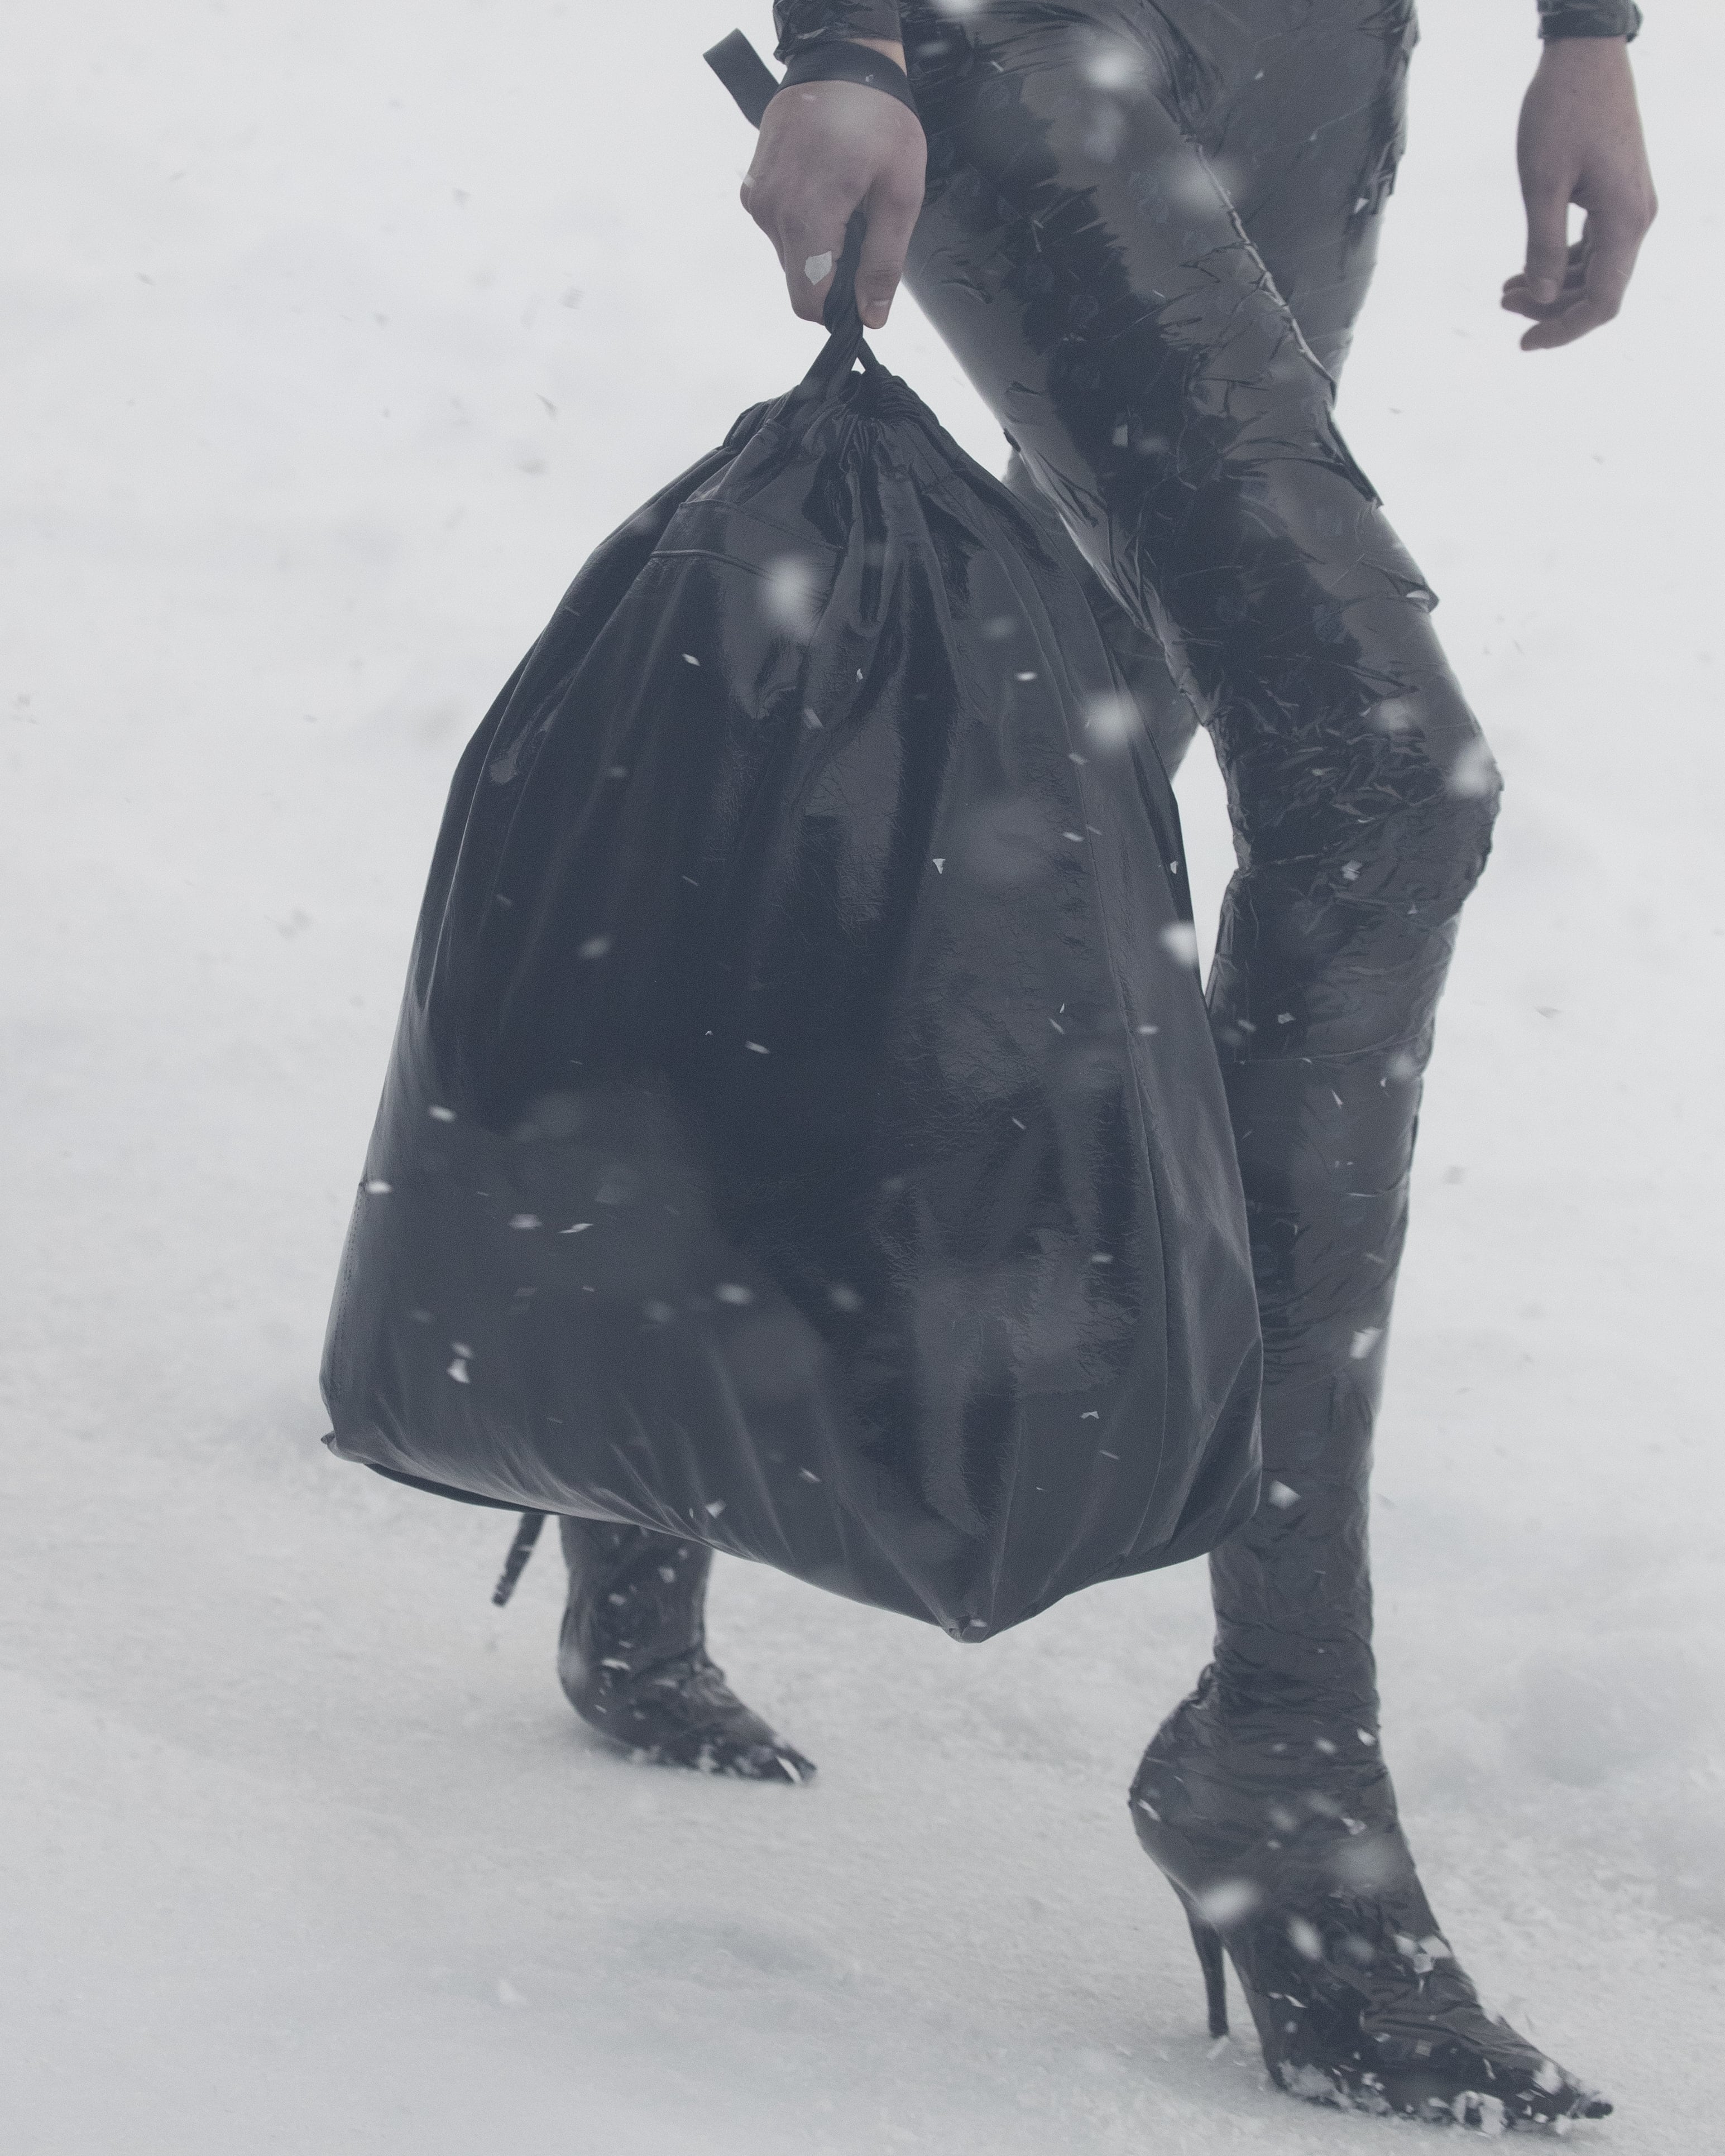 Balenciaga Debuts $1,800 Trash Bag That 'Looks Exactly Like Hefty